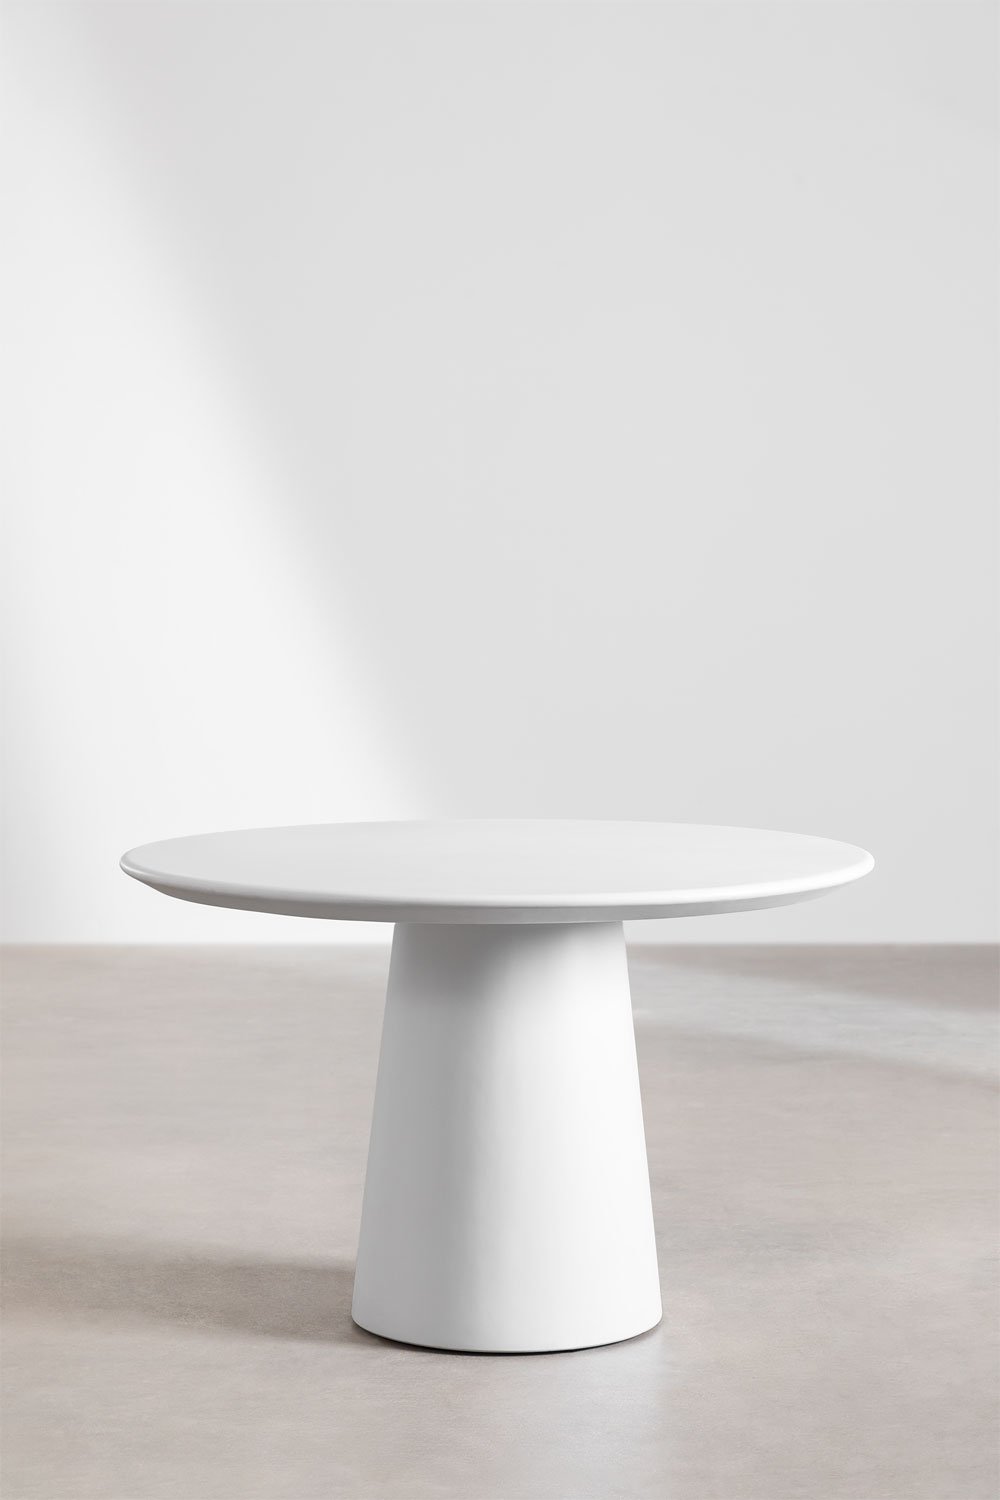 Table à manger ronde en ciment (Ø120 cm) Zillad, image de la galerie 2